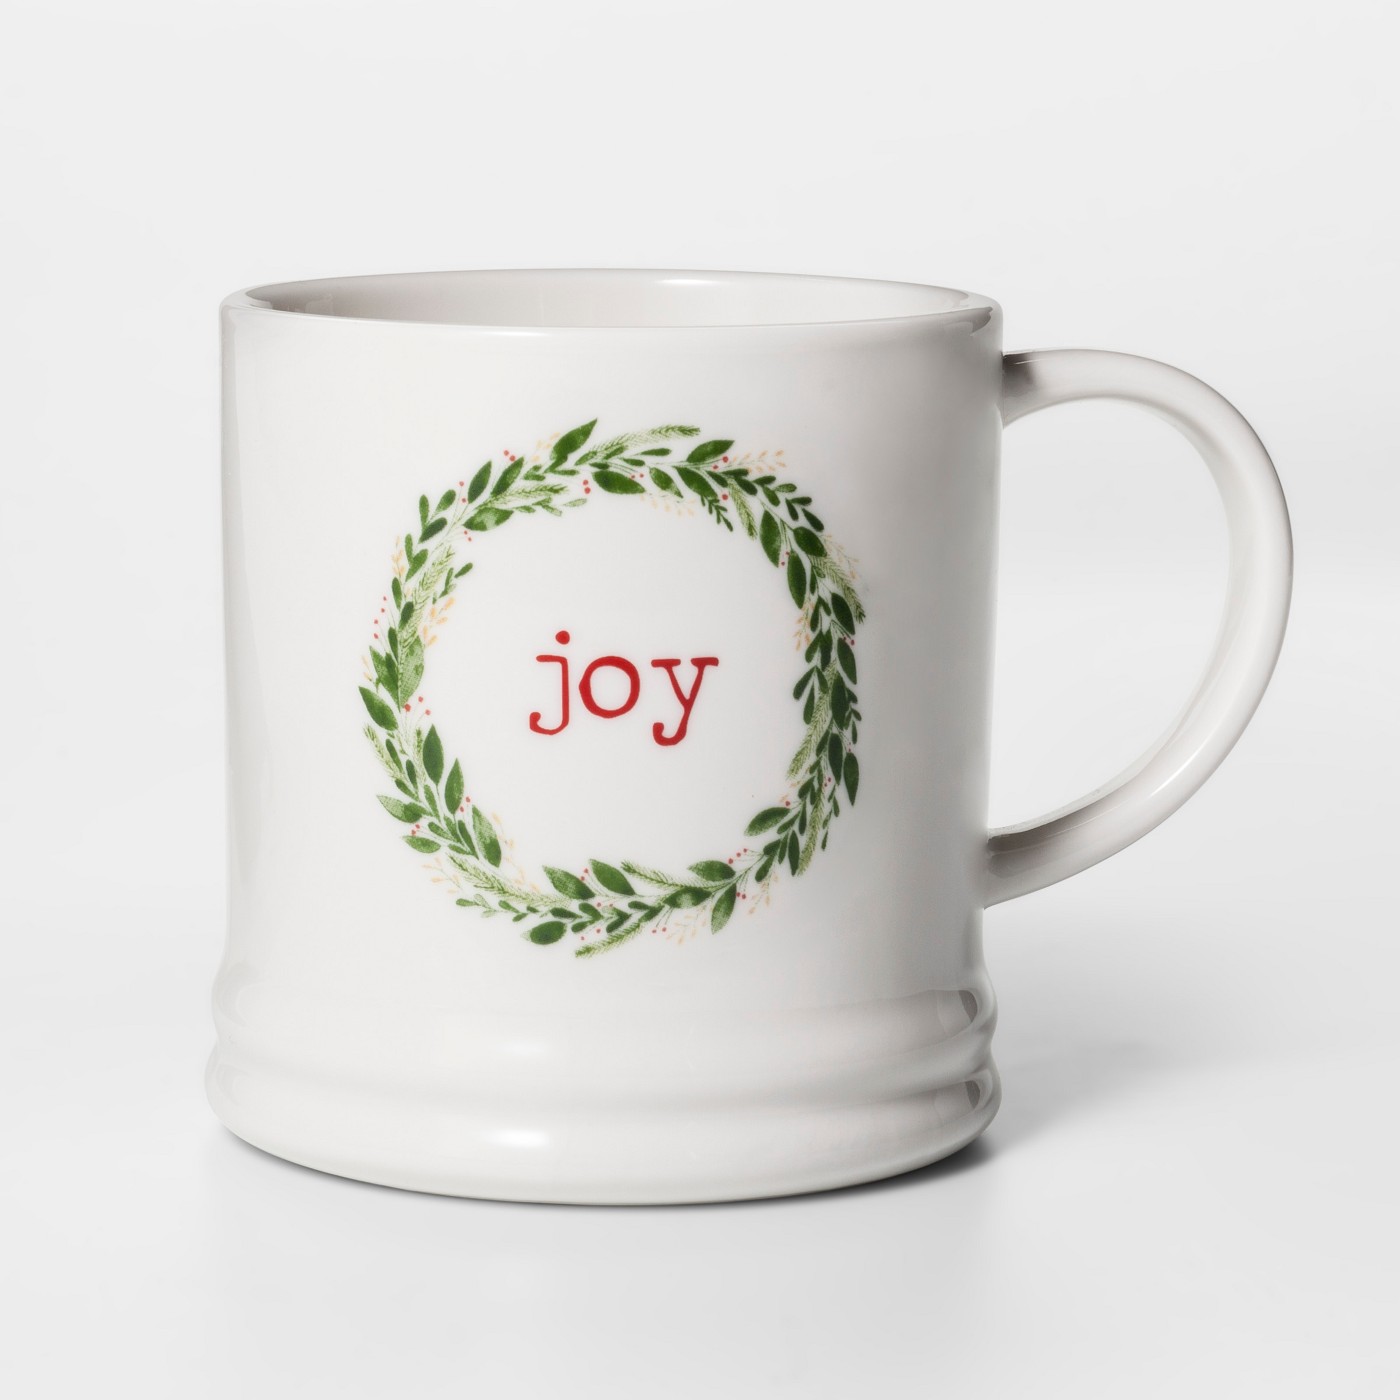 16oz Porcelain Joy Classic Wreath Mug - Thresholdâ„¢ - image 1 of 1